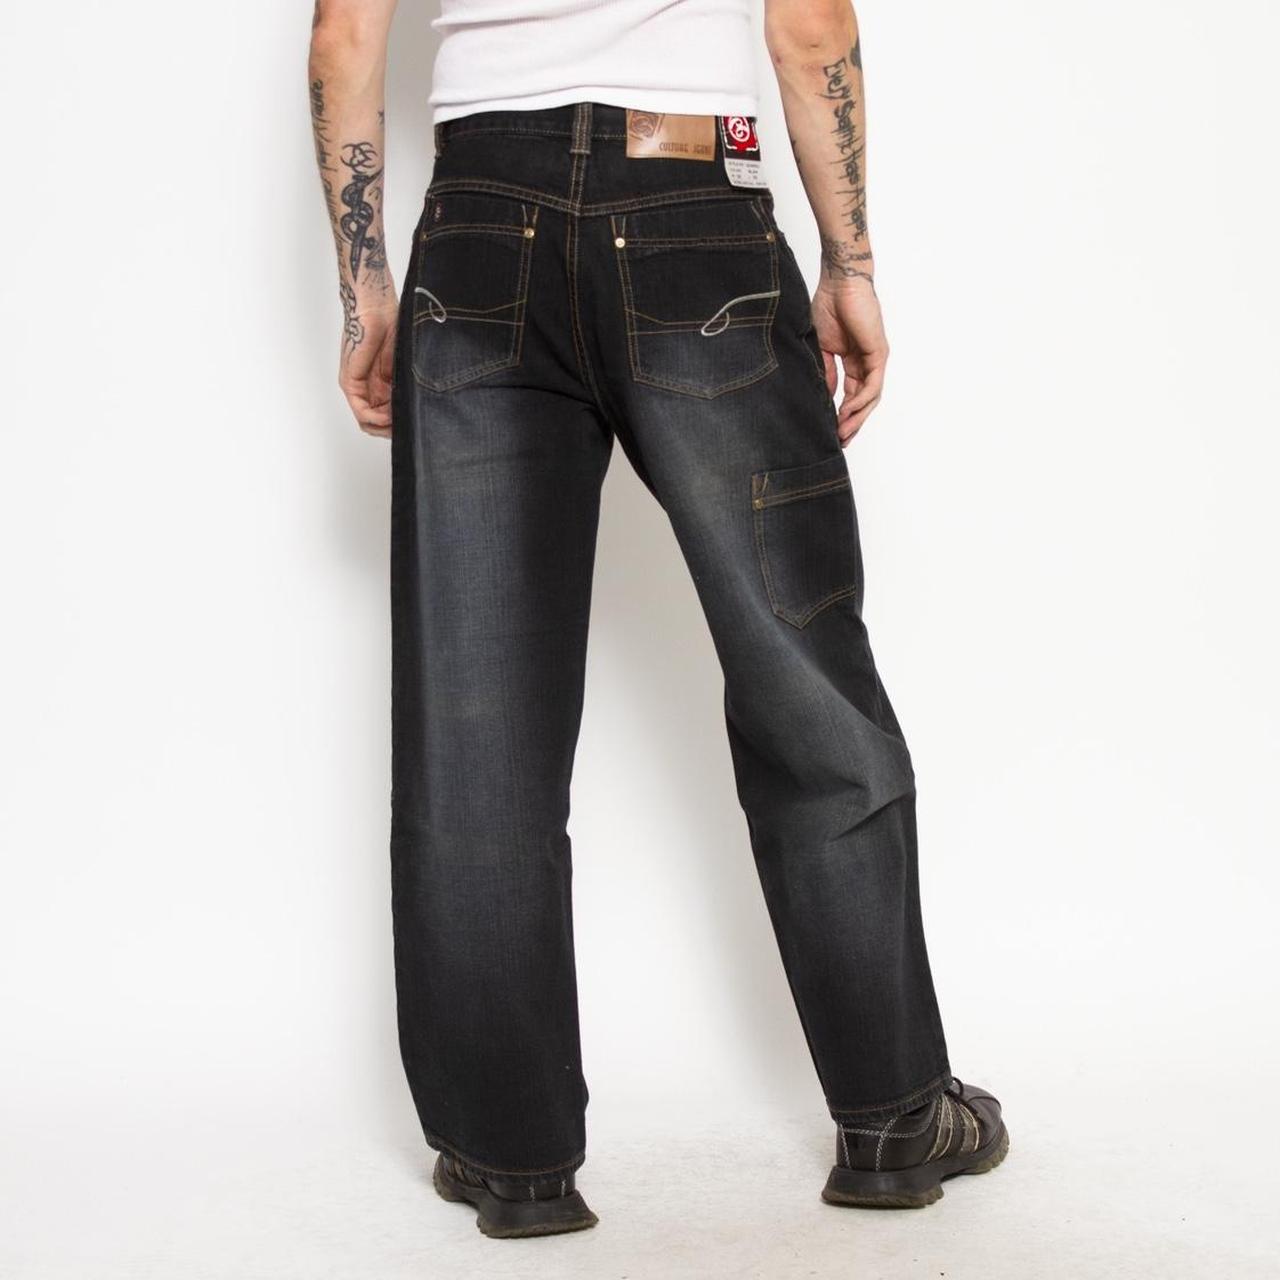 Cultura Men's Black Jeans (3)